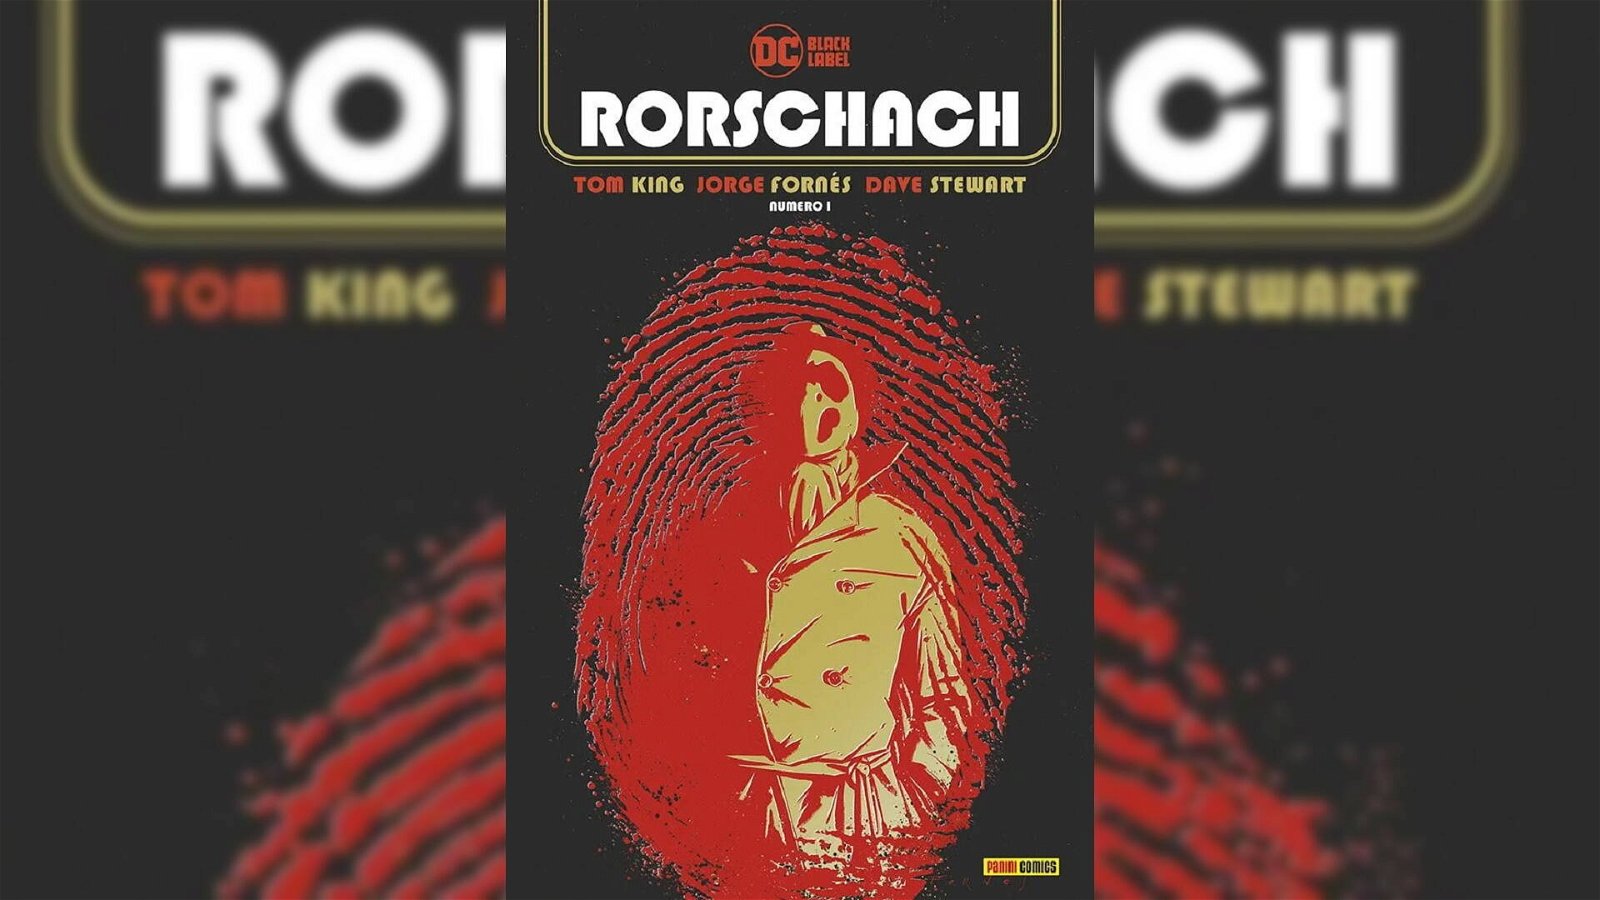 Immagine di Rorschach 1 di Tom King & Jorge Fornés, la recensione